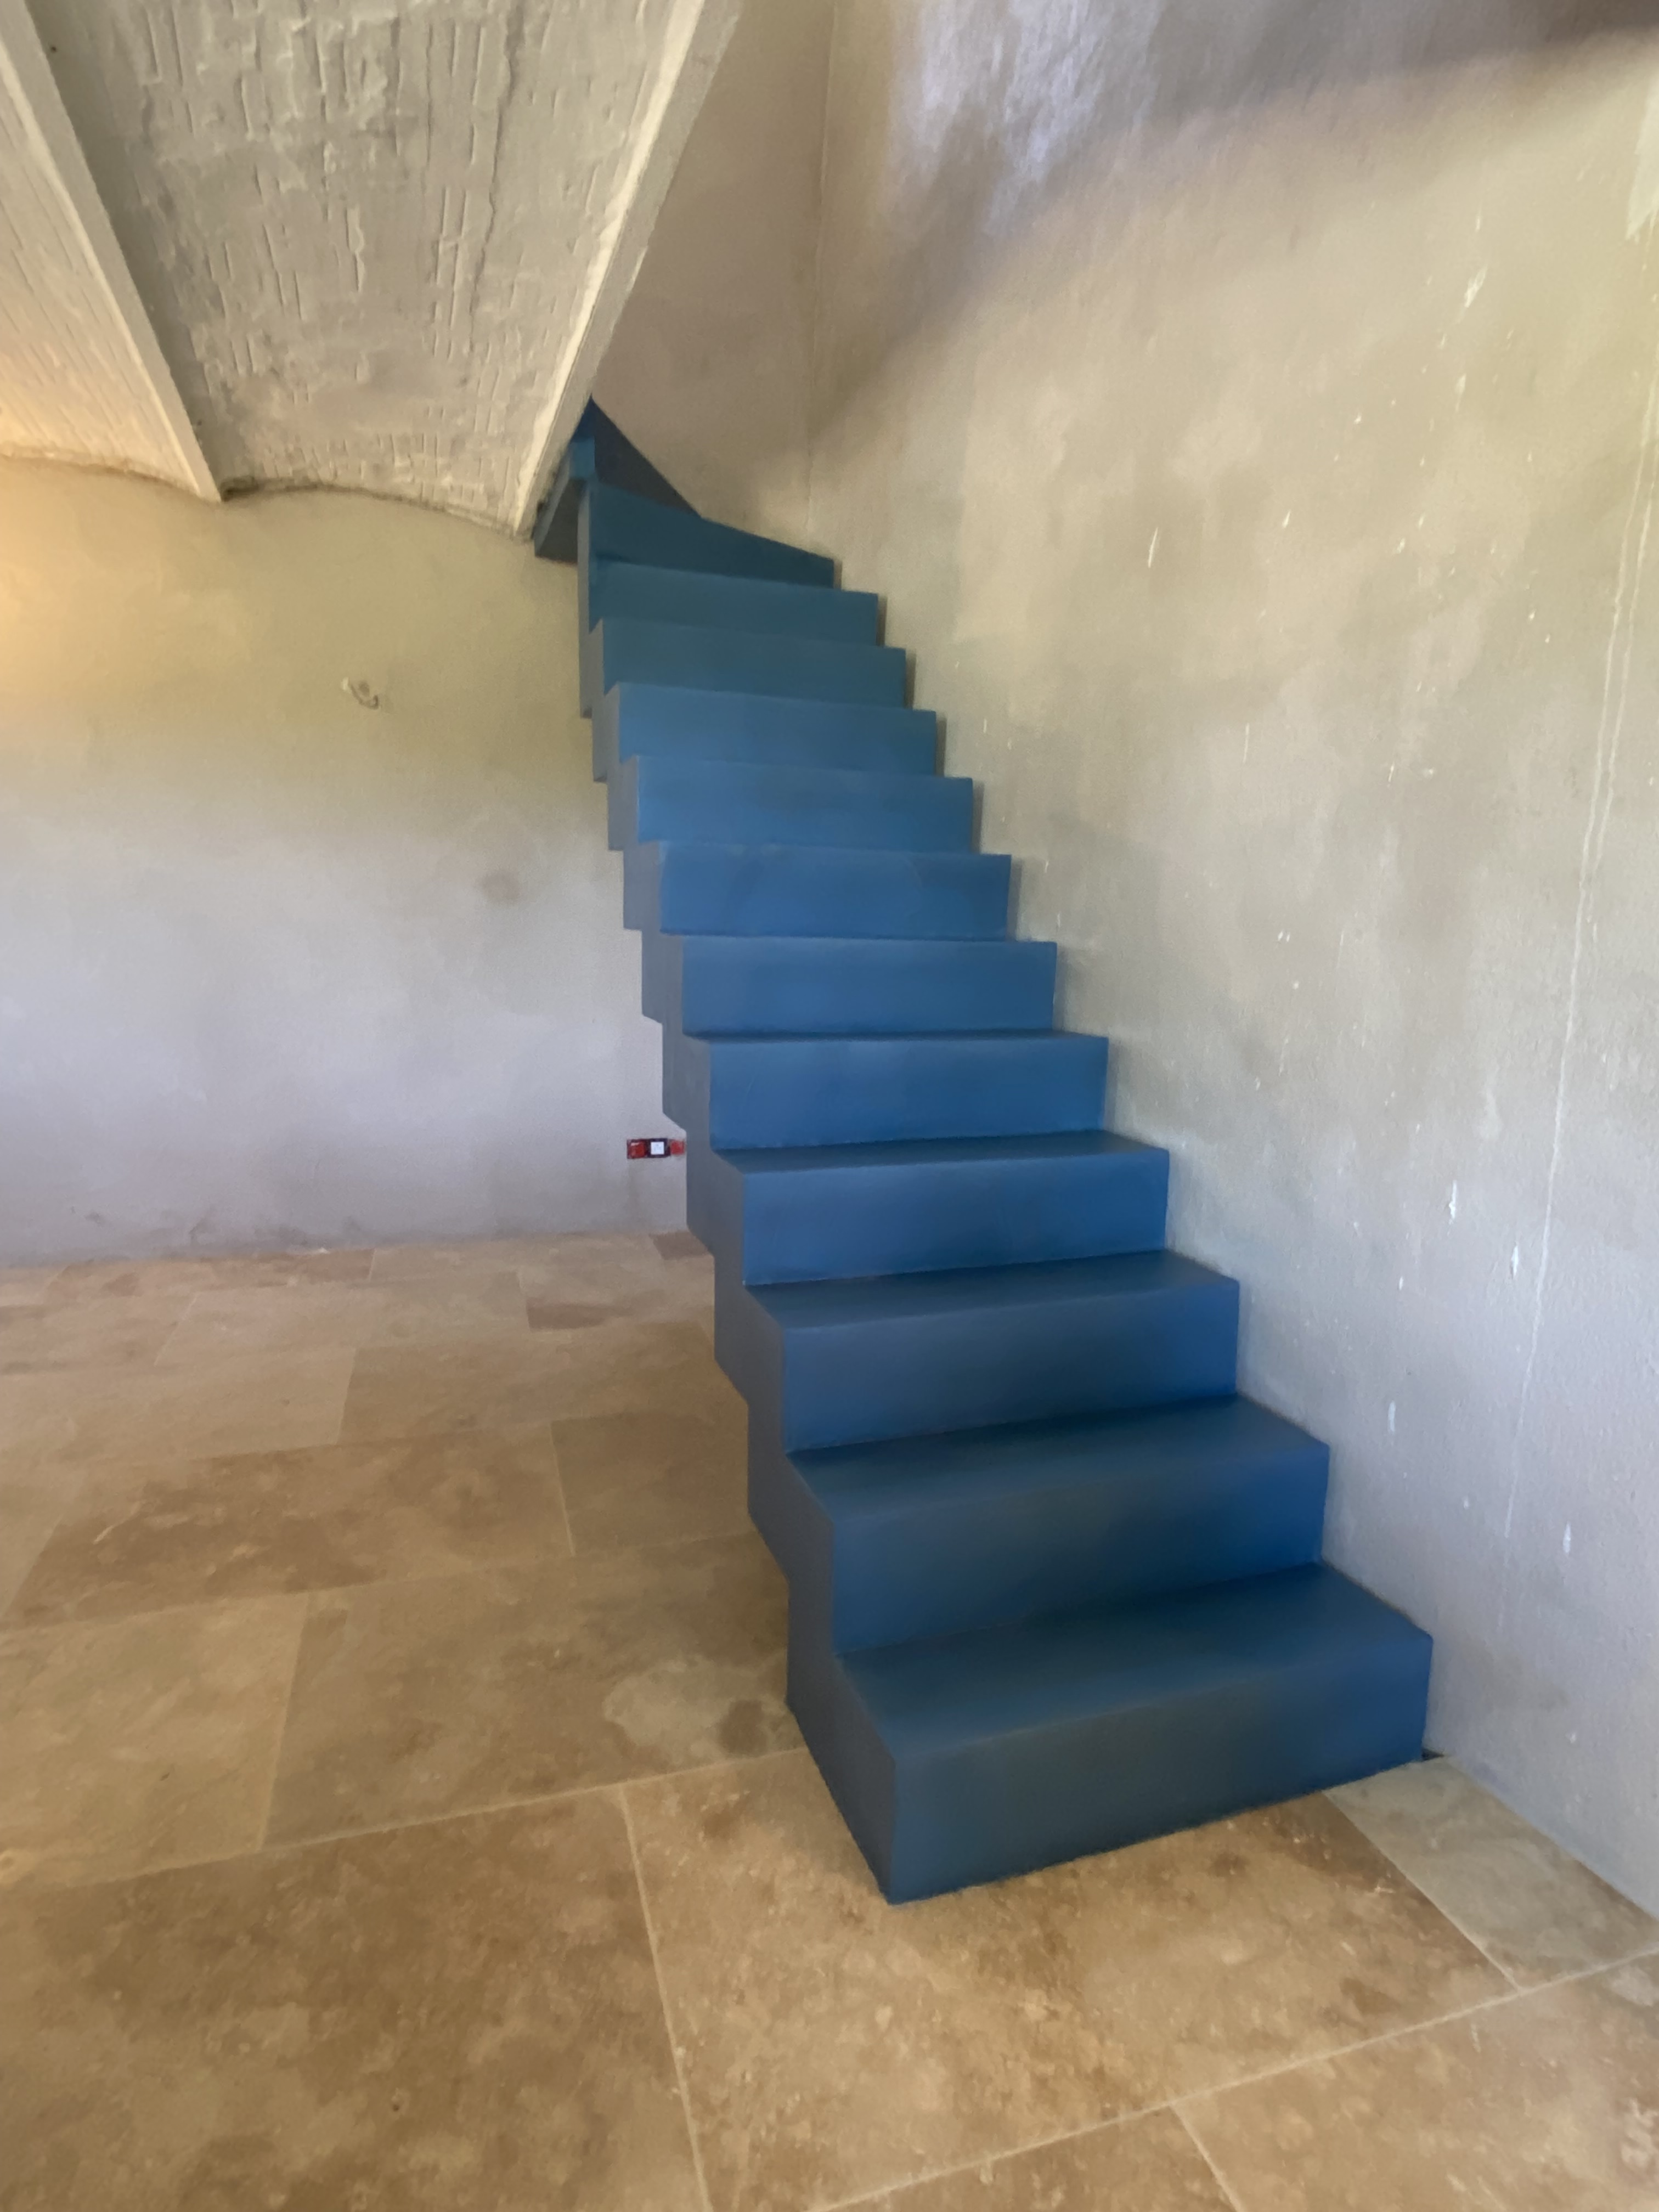 Escalier droit à crémaillère dans un chantier en rénovation à Evenos à proximité de Toulon dans le département du Var.